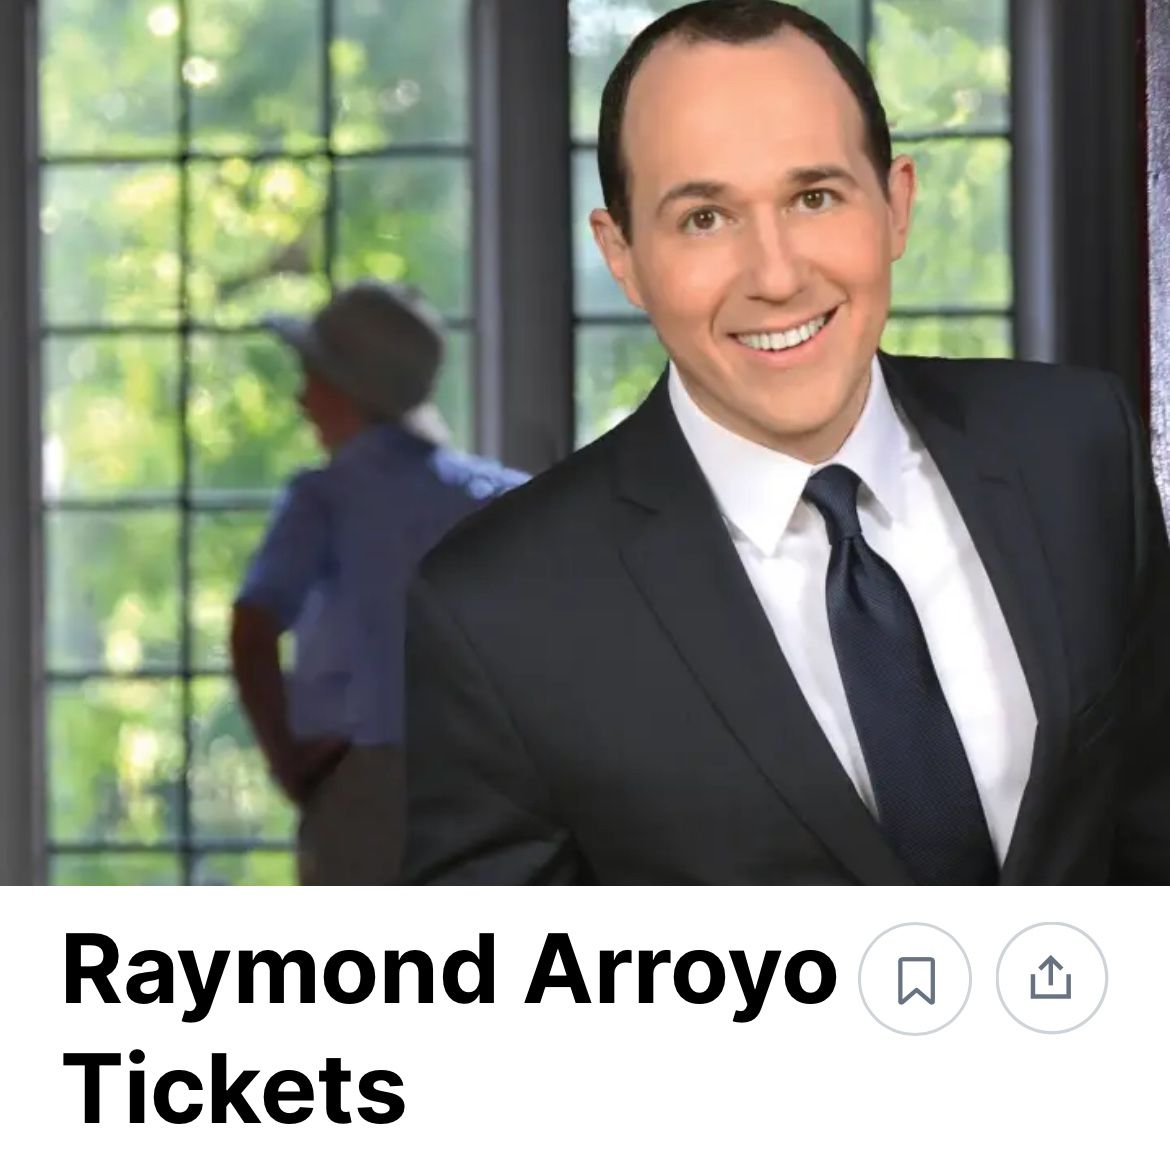 Raymond Arroyo & Jose Feliciano at Ryman 